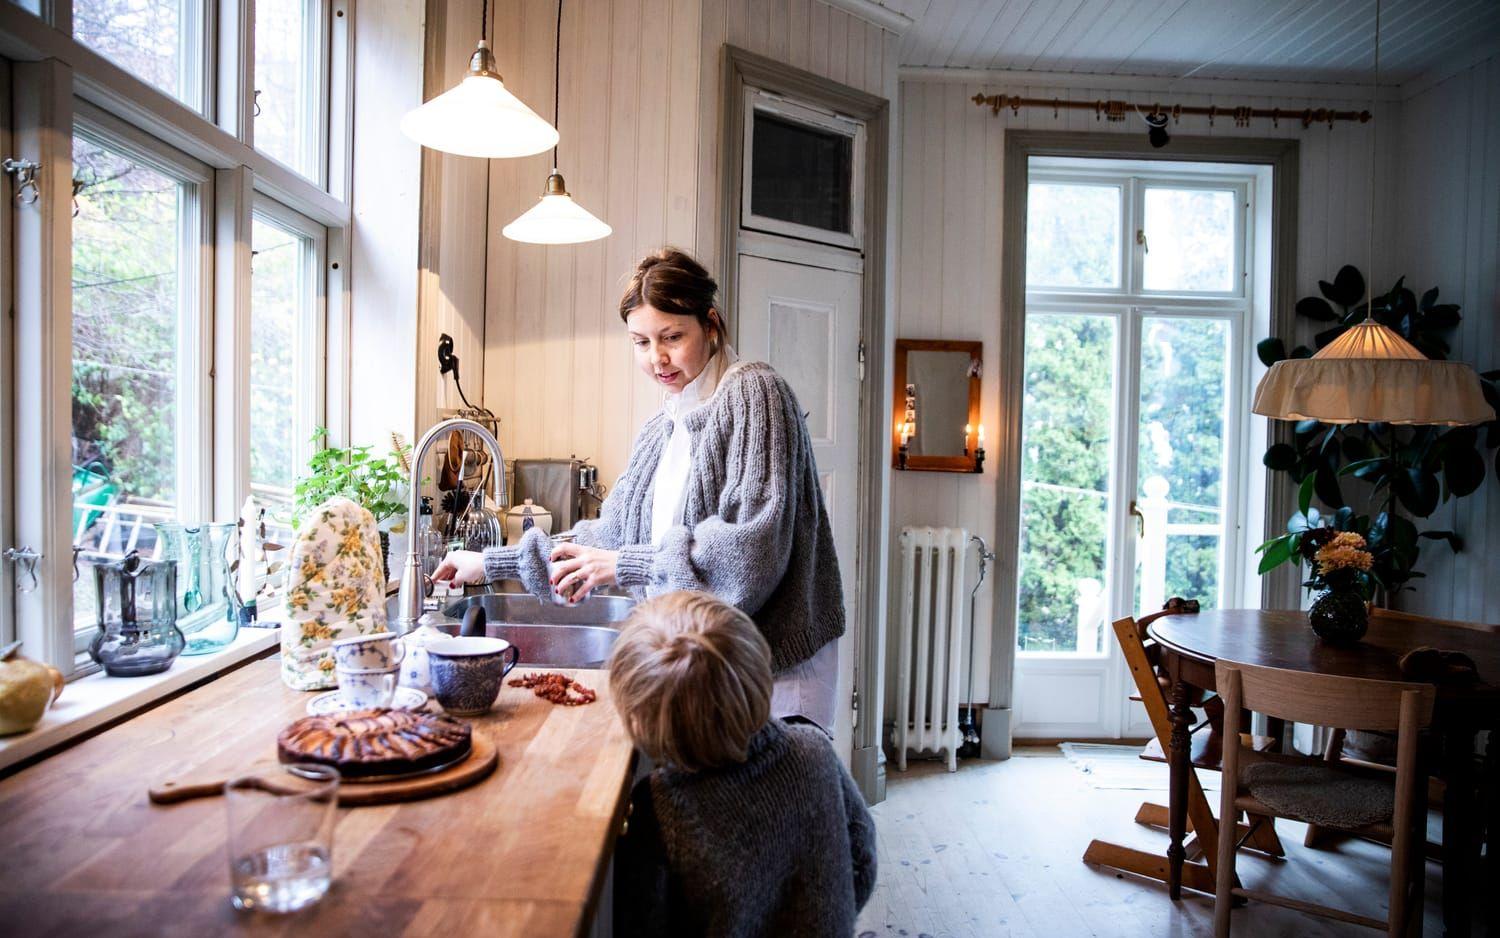 Emerentia Leifsdotter Lund är journalist och husrenoverare med stort intresse för byggnadsvård, hållbarhet och inredning.